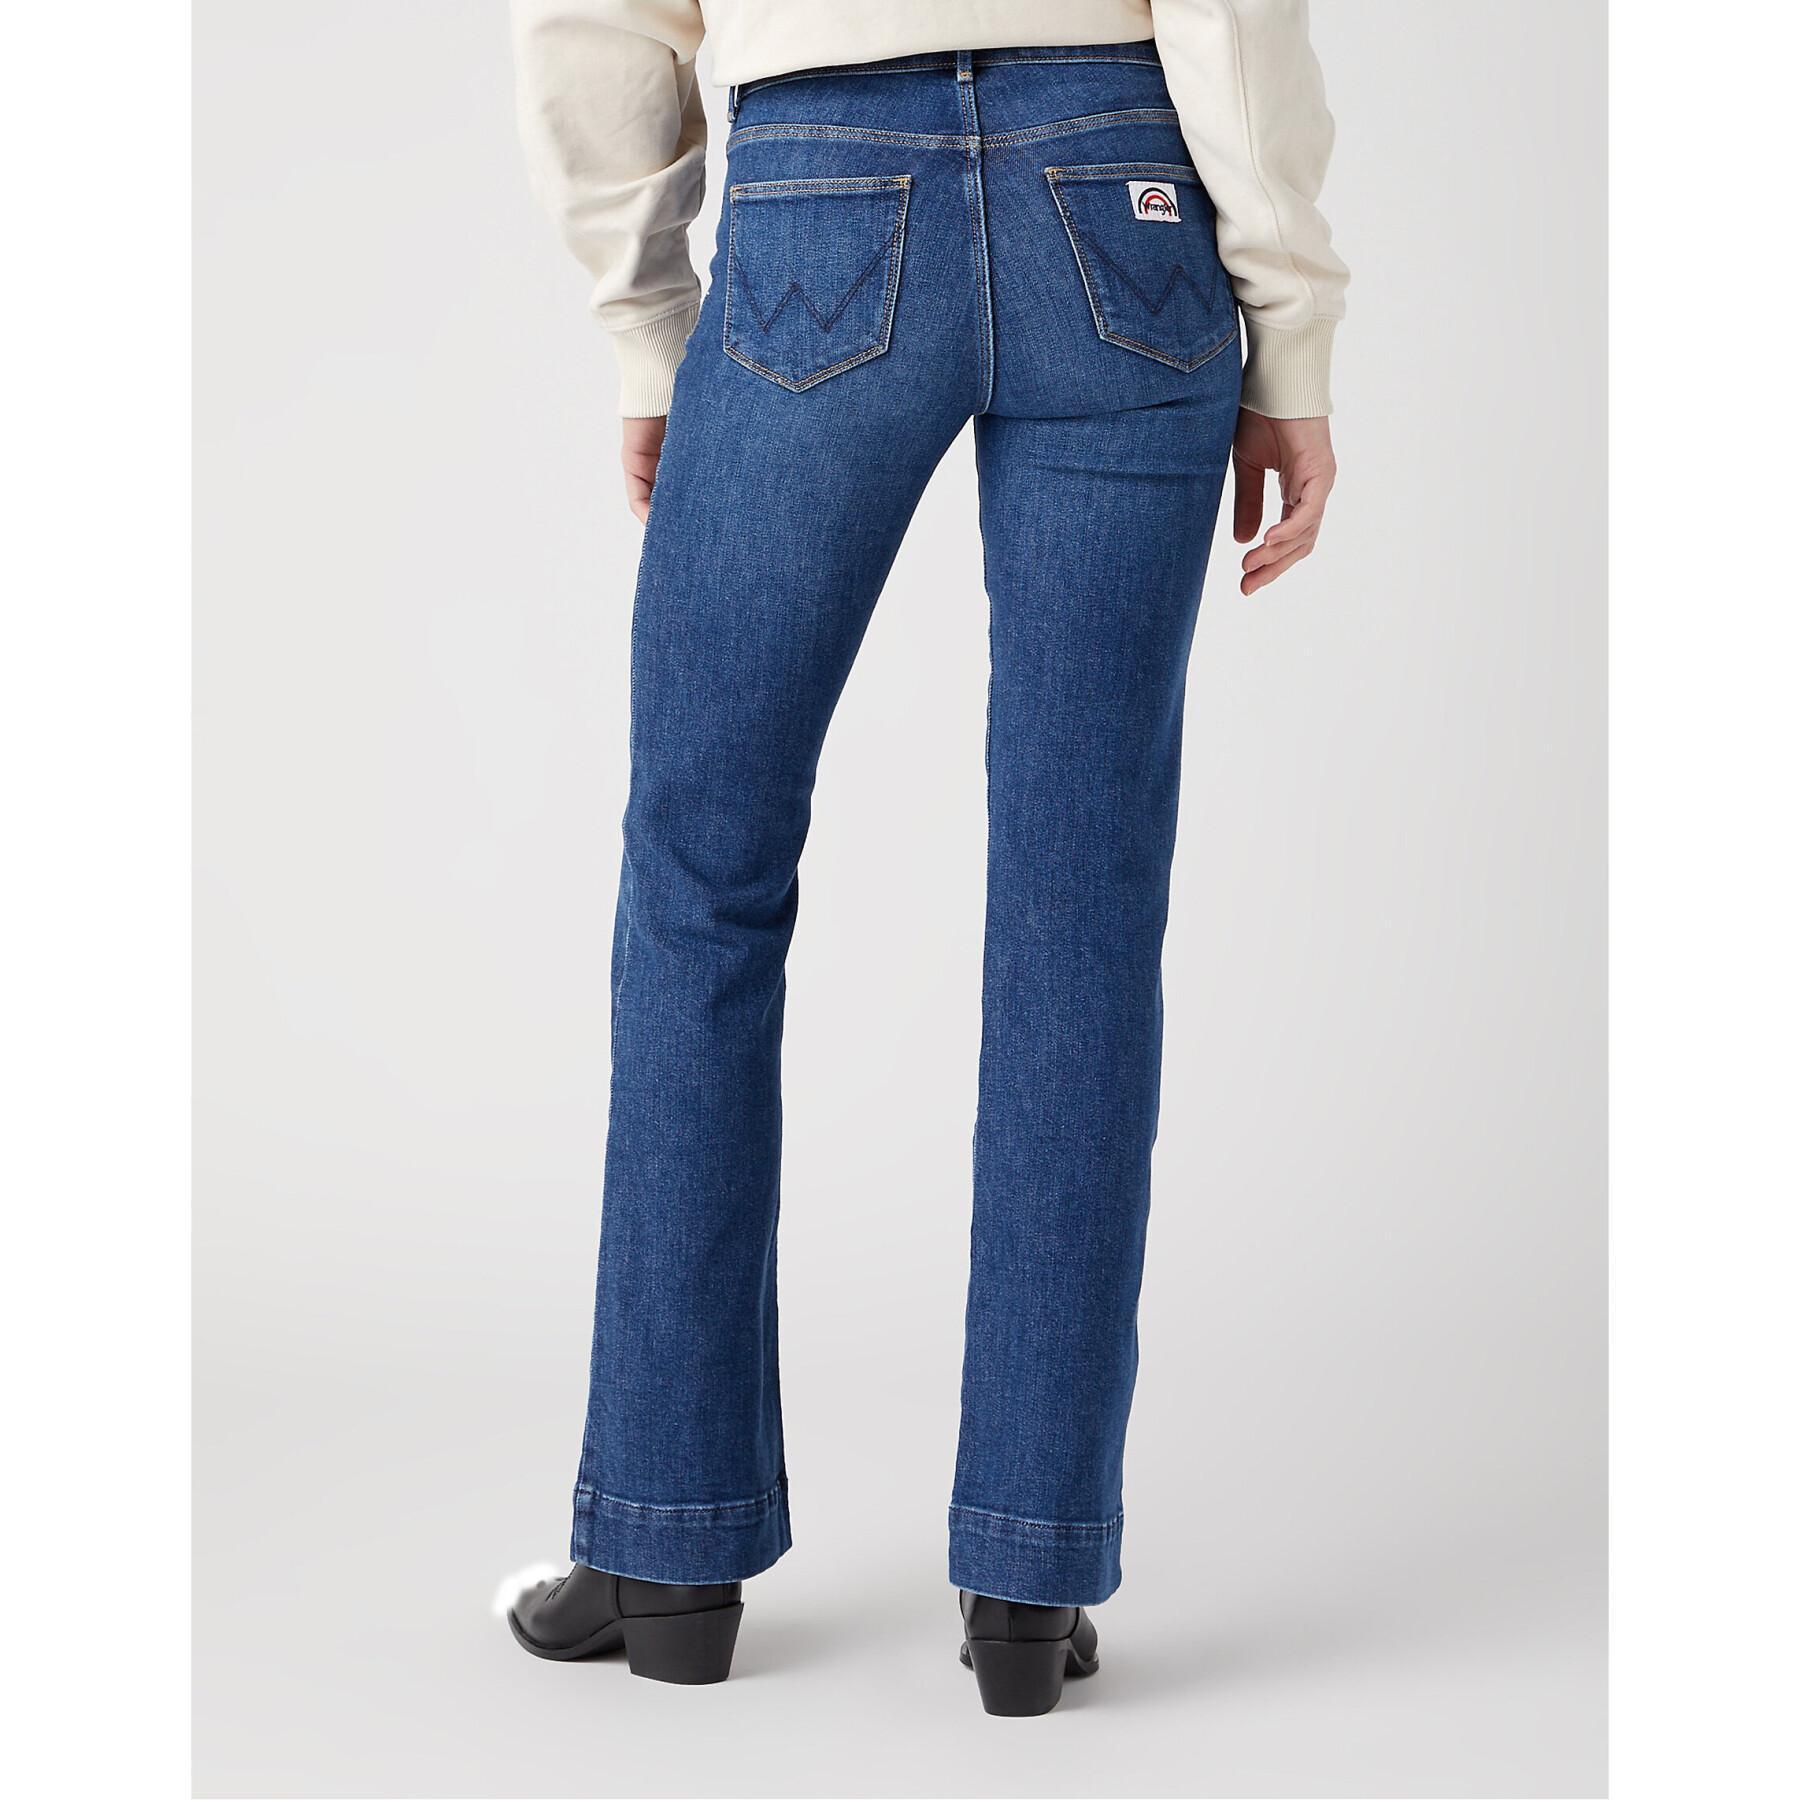 Women's jeans Wrangler Flare